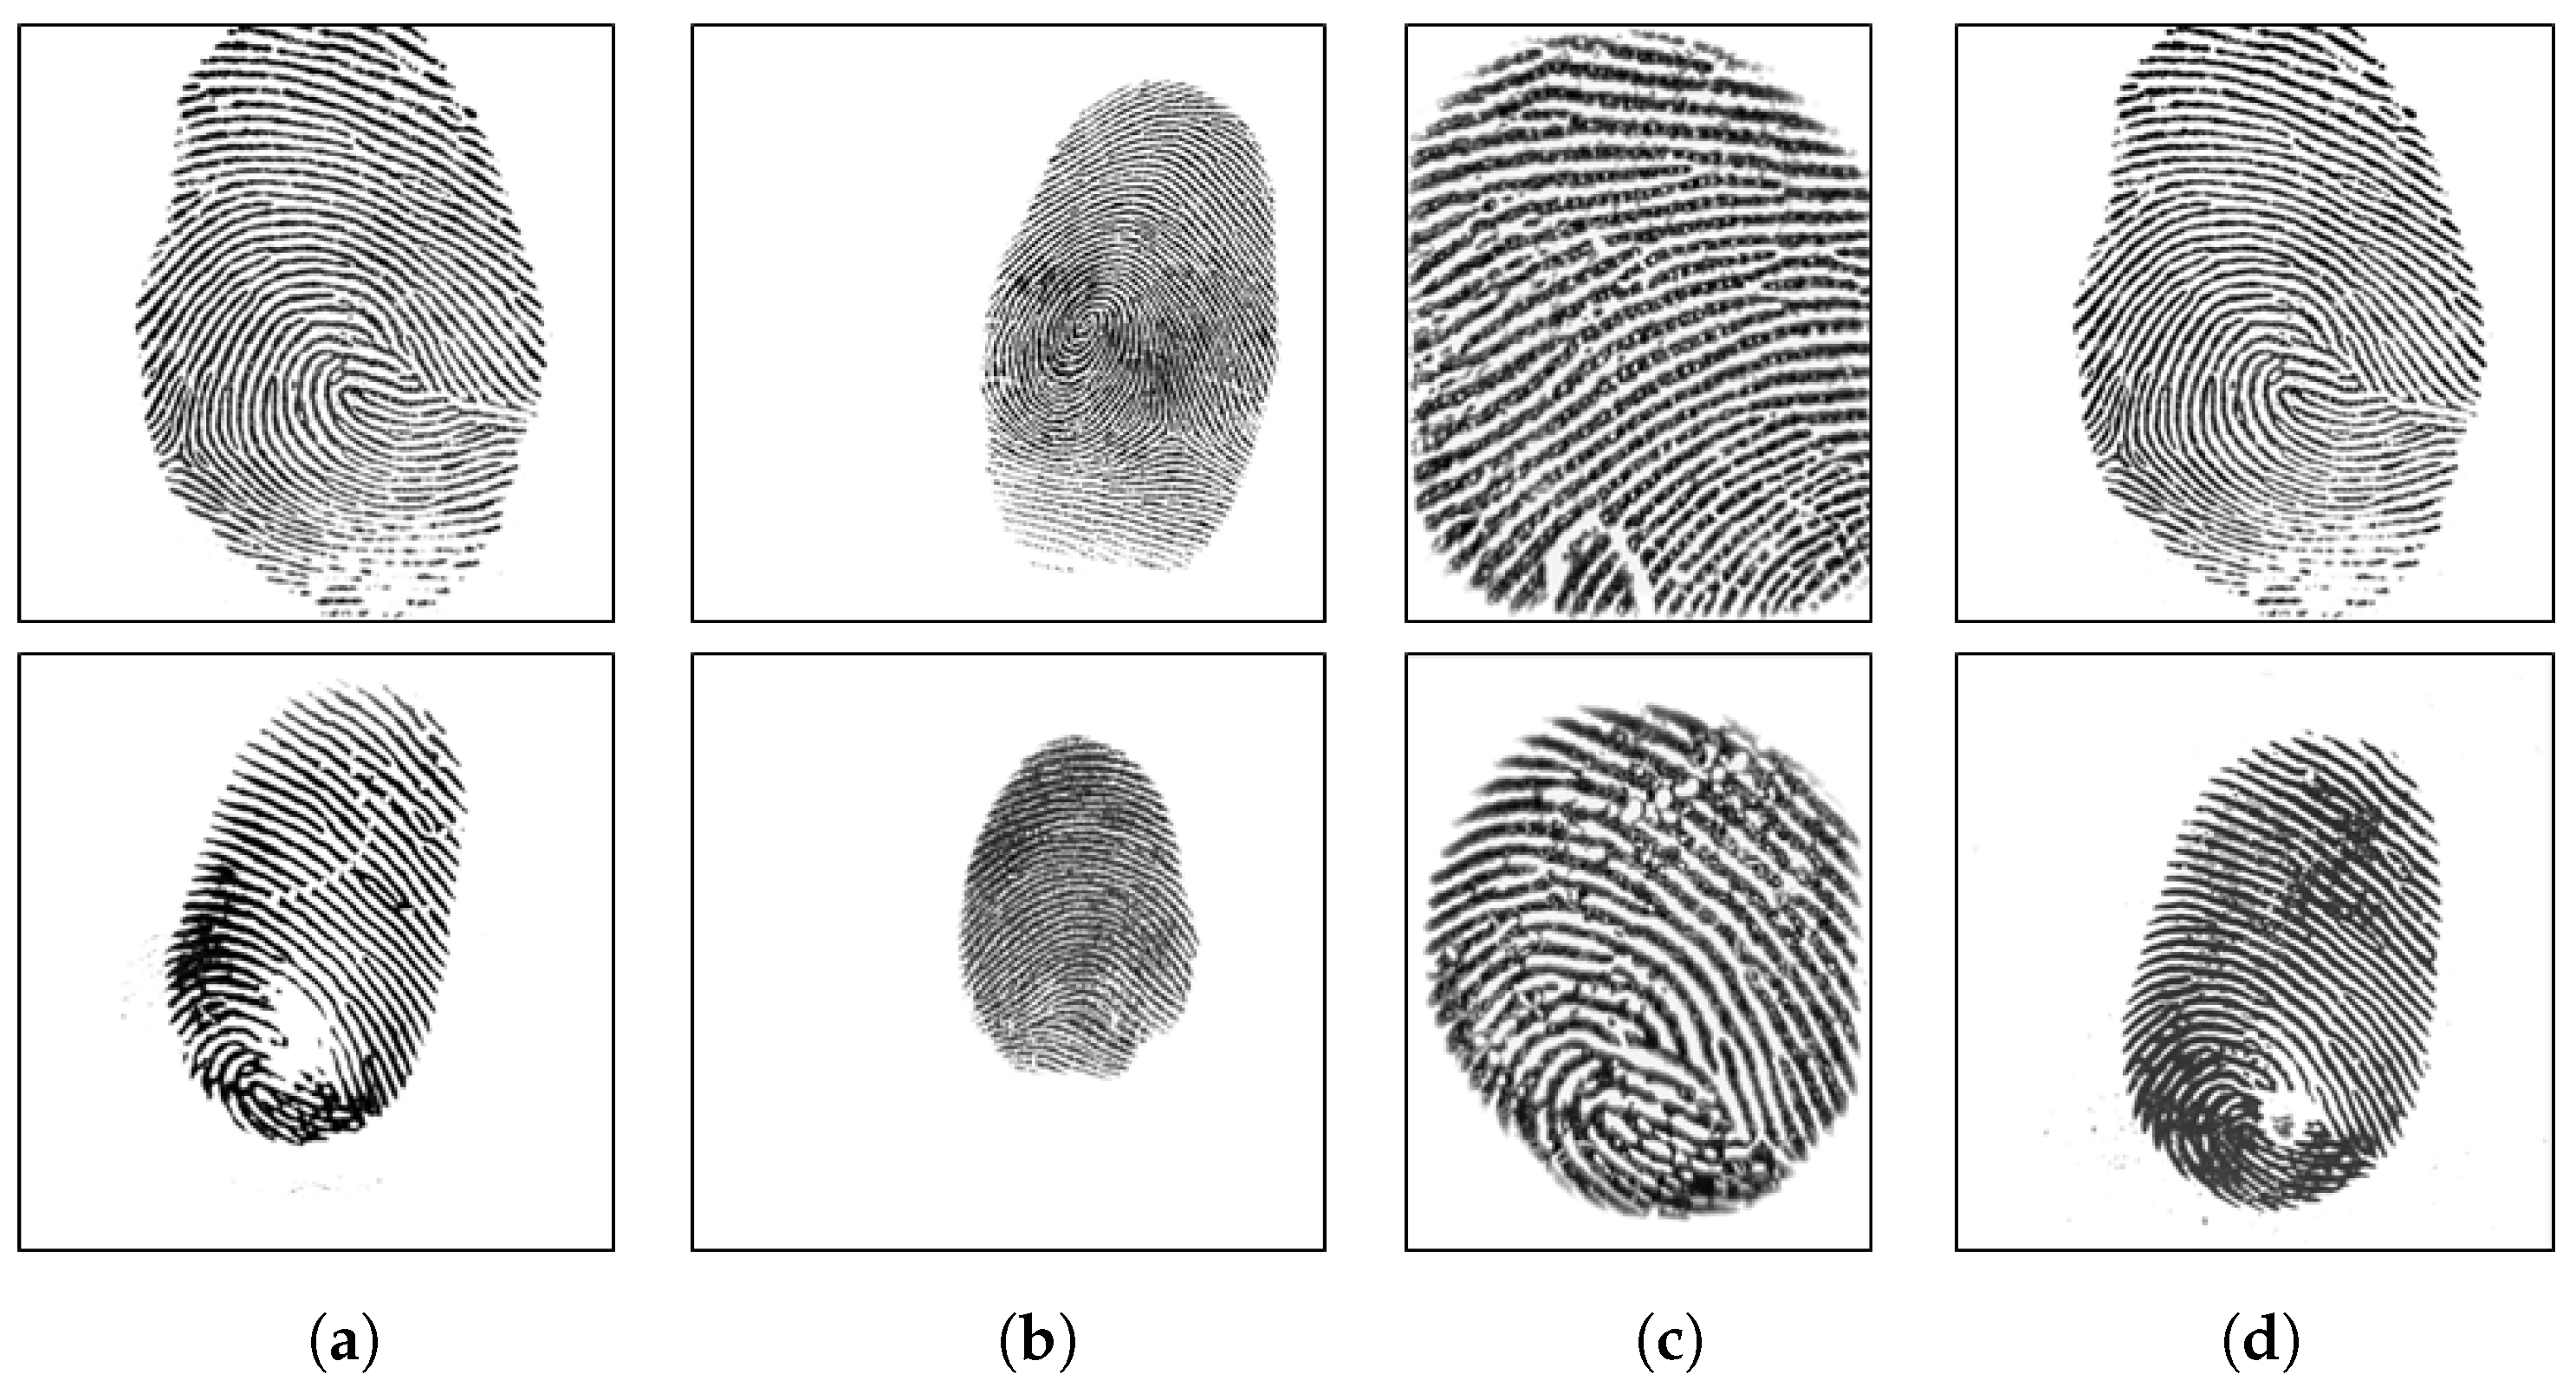 digitalpersona fingerprint software 5.2